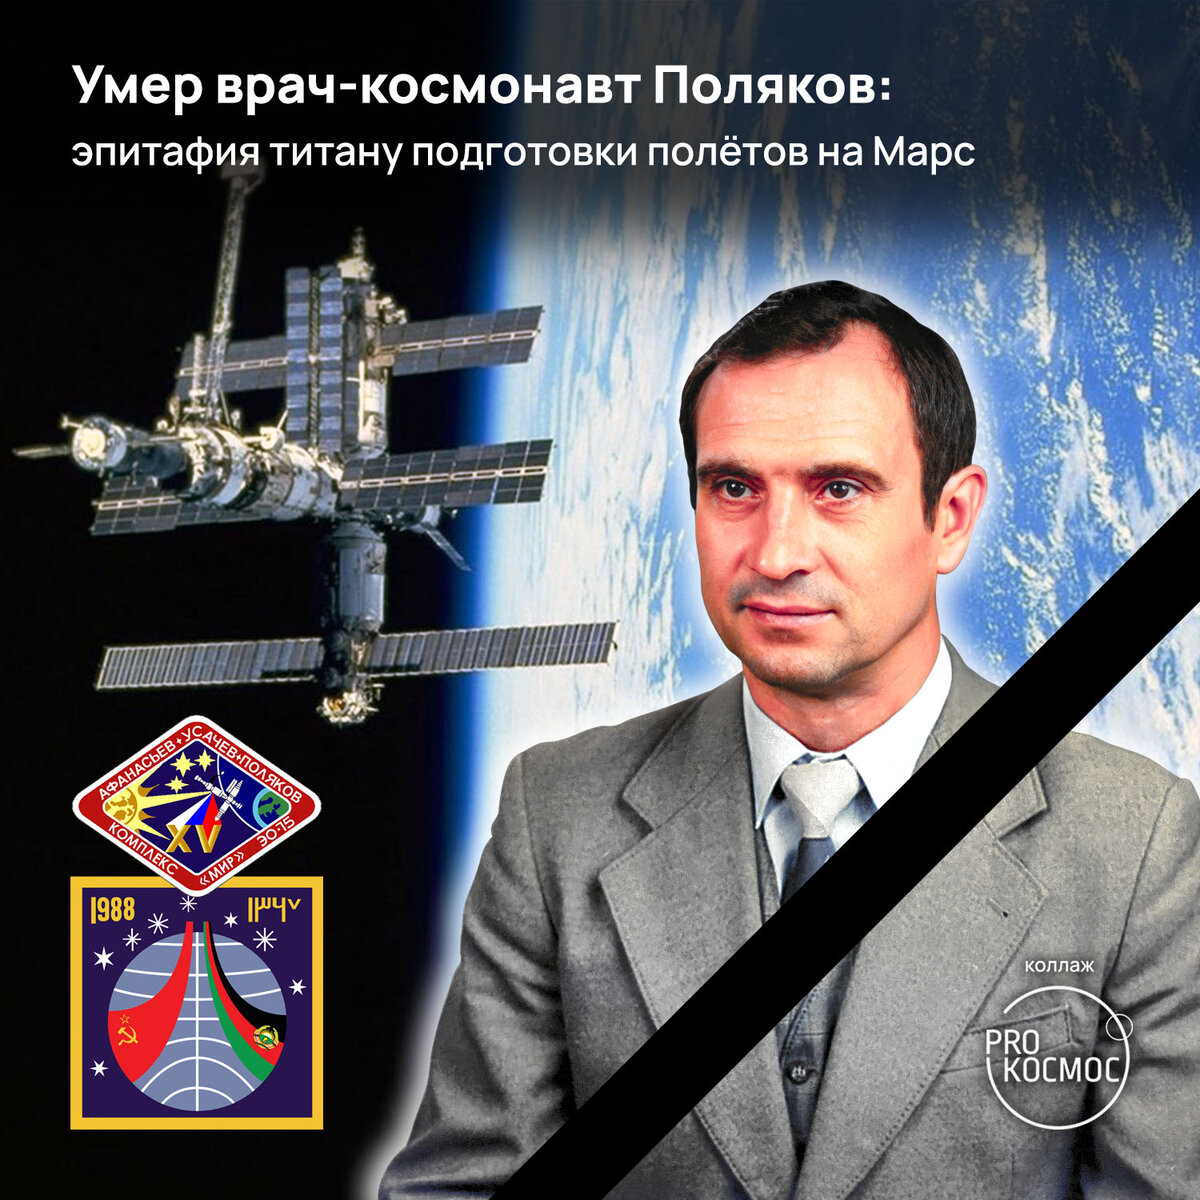 В Туле в возрасте 80 лет скончался советский и российский врач-космонавт Валерий Поляков. Об этом сообщил Роскосмос в понедельник, 19 сентября.